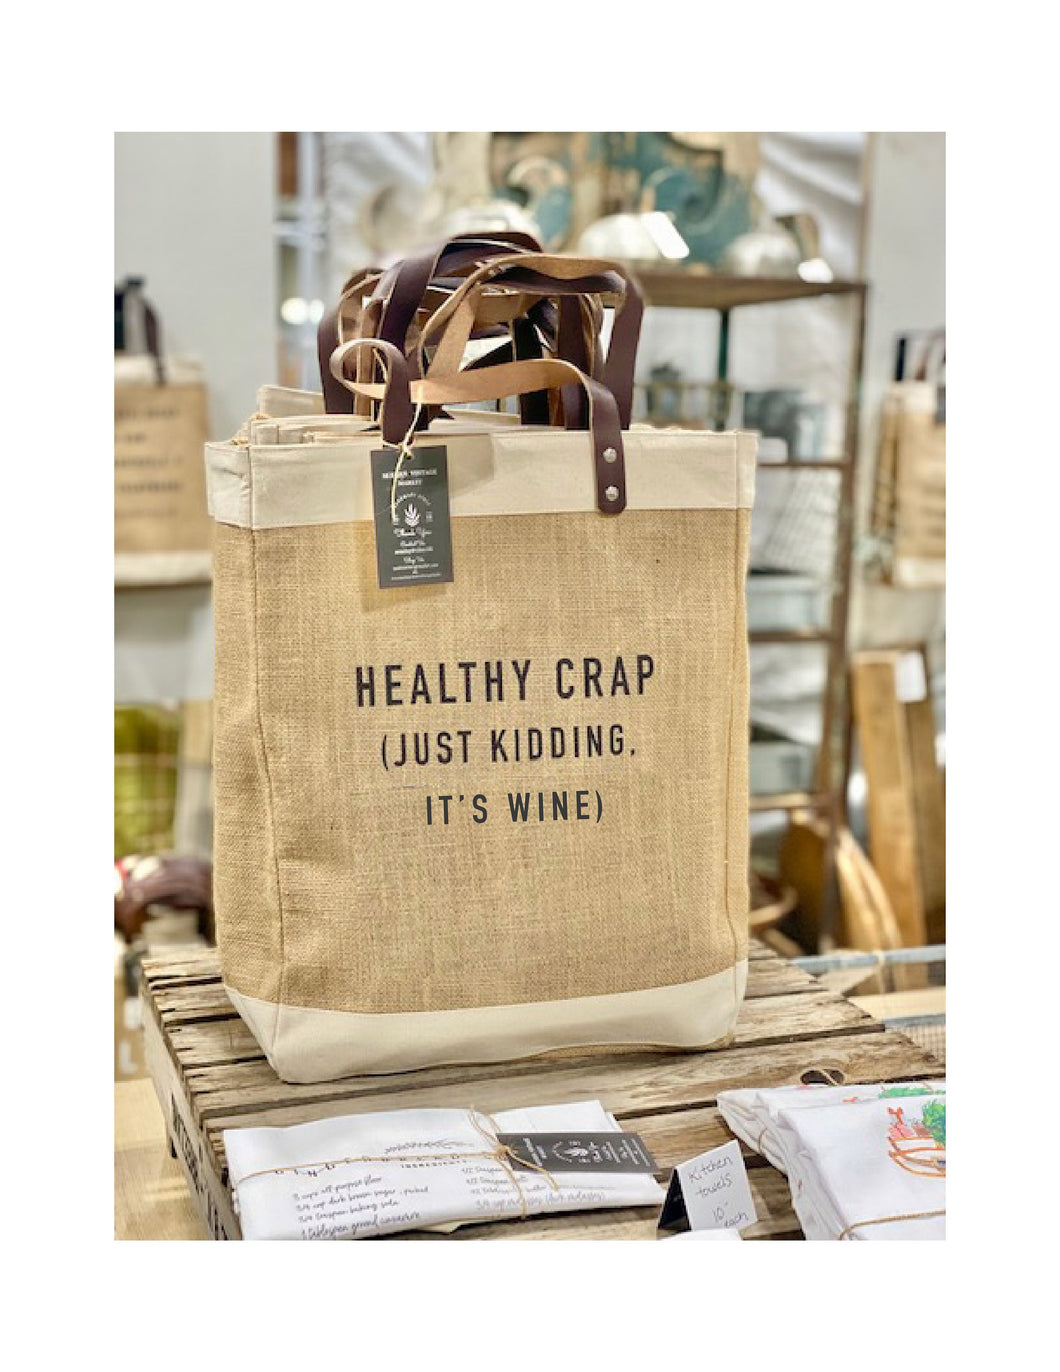 Healthy Crap|Quote Jute Bags|IT'S WINE|Organic Food|Beach Bag|Market Bag|Jute Tote bag|Shopping Bag|Burlap Bag|Farmhouse Bag|Grocery Bag